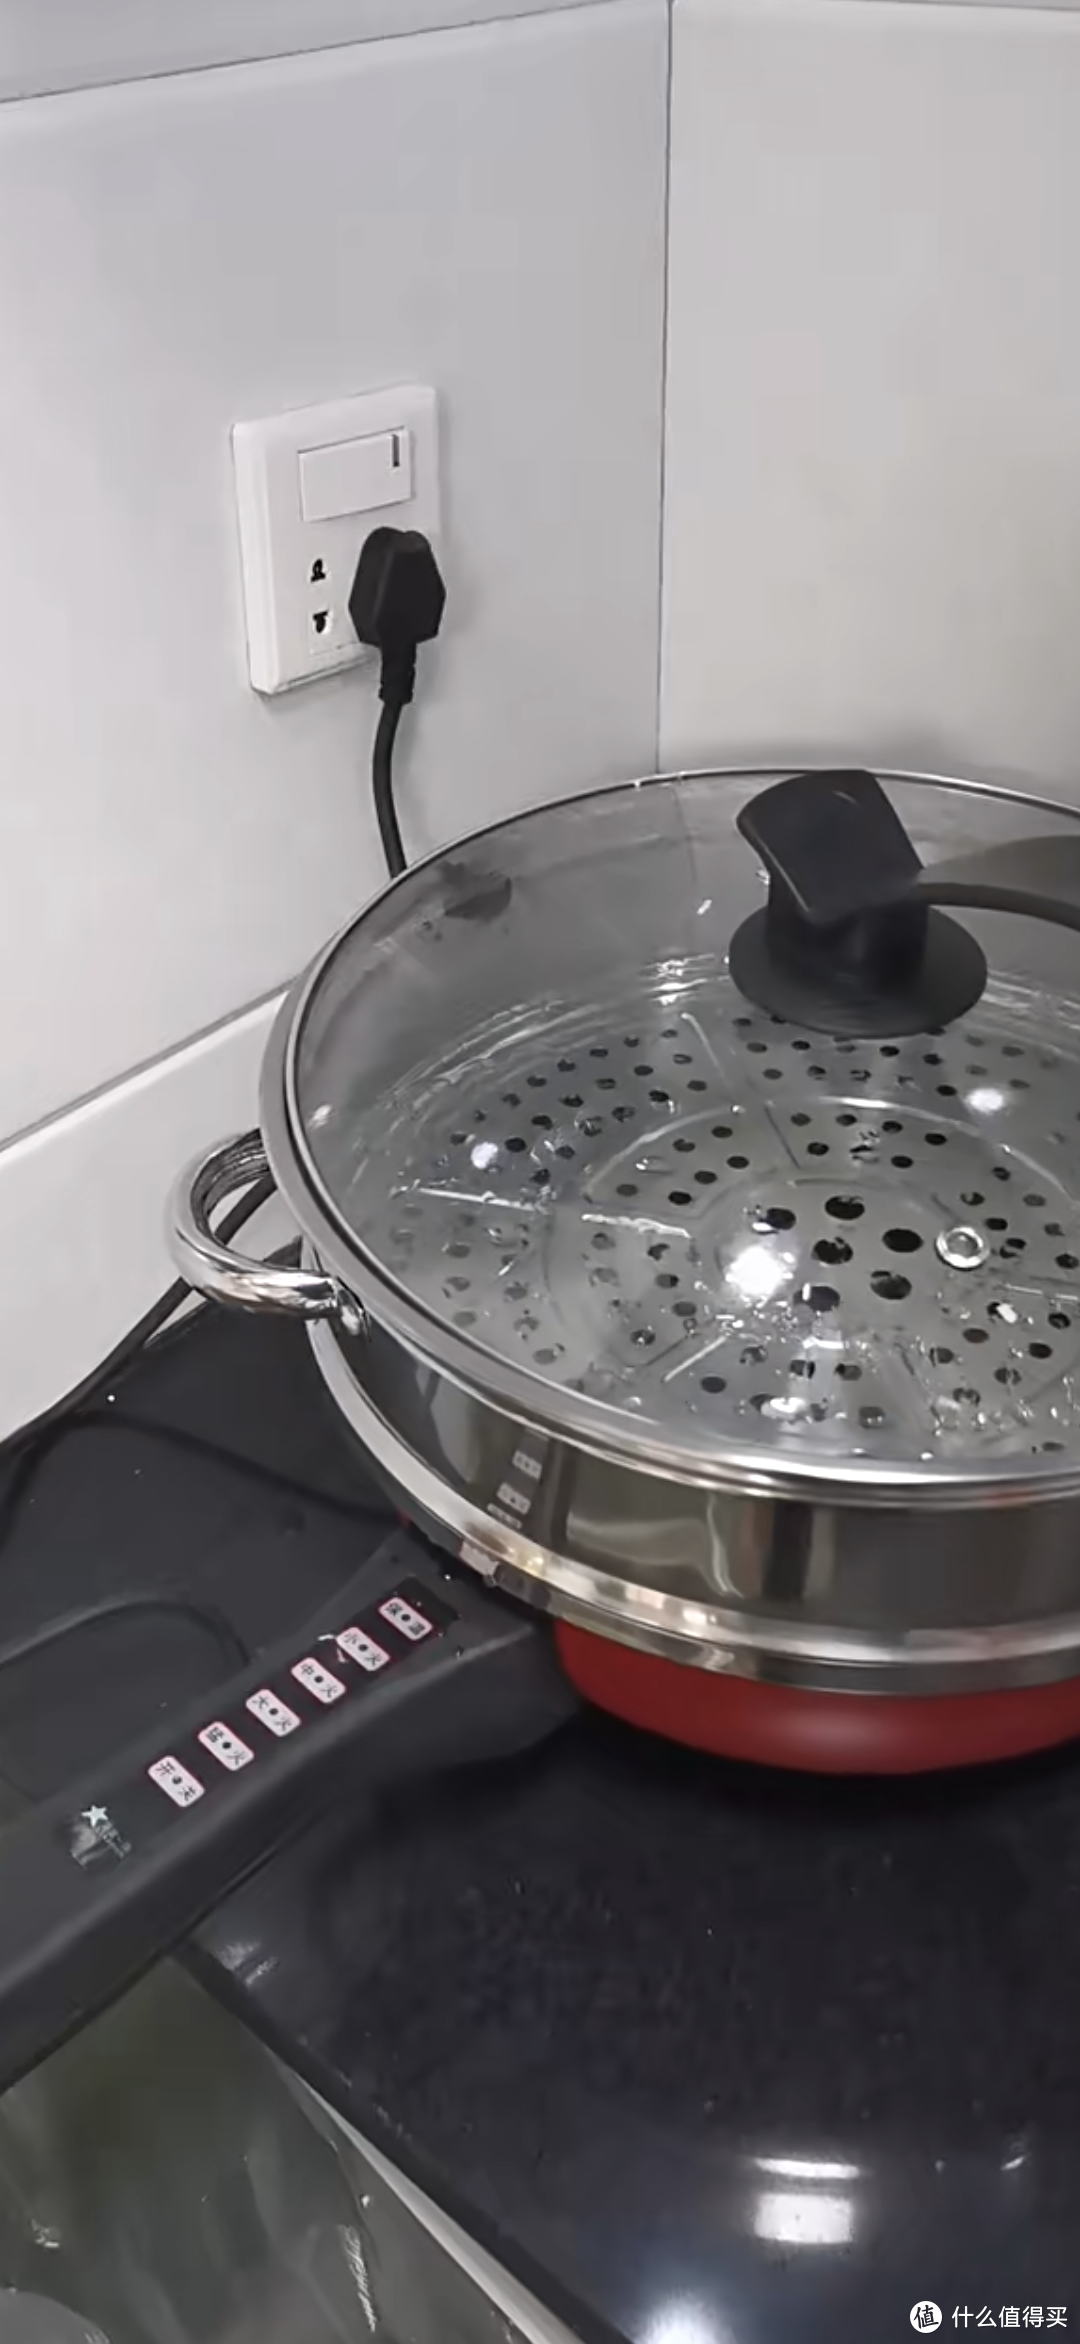 家用电器之蒸炒一体锅。